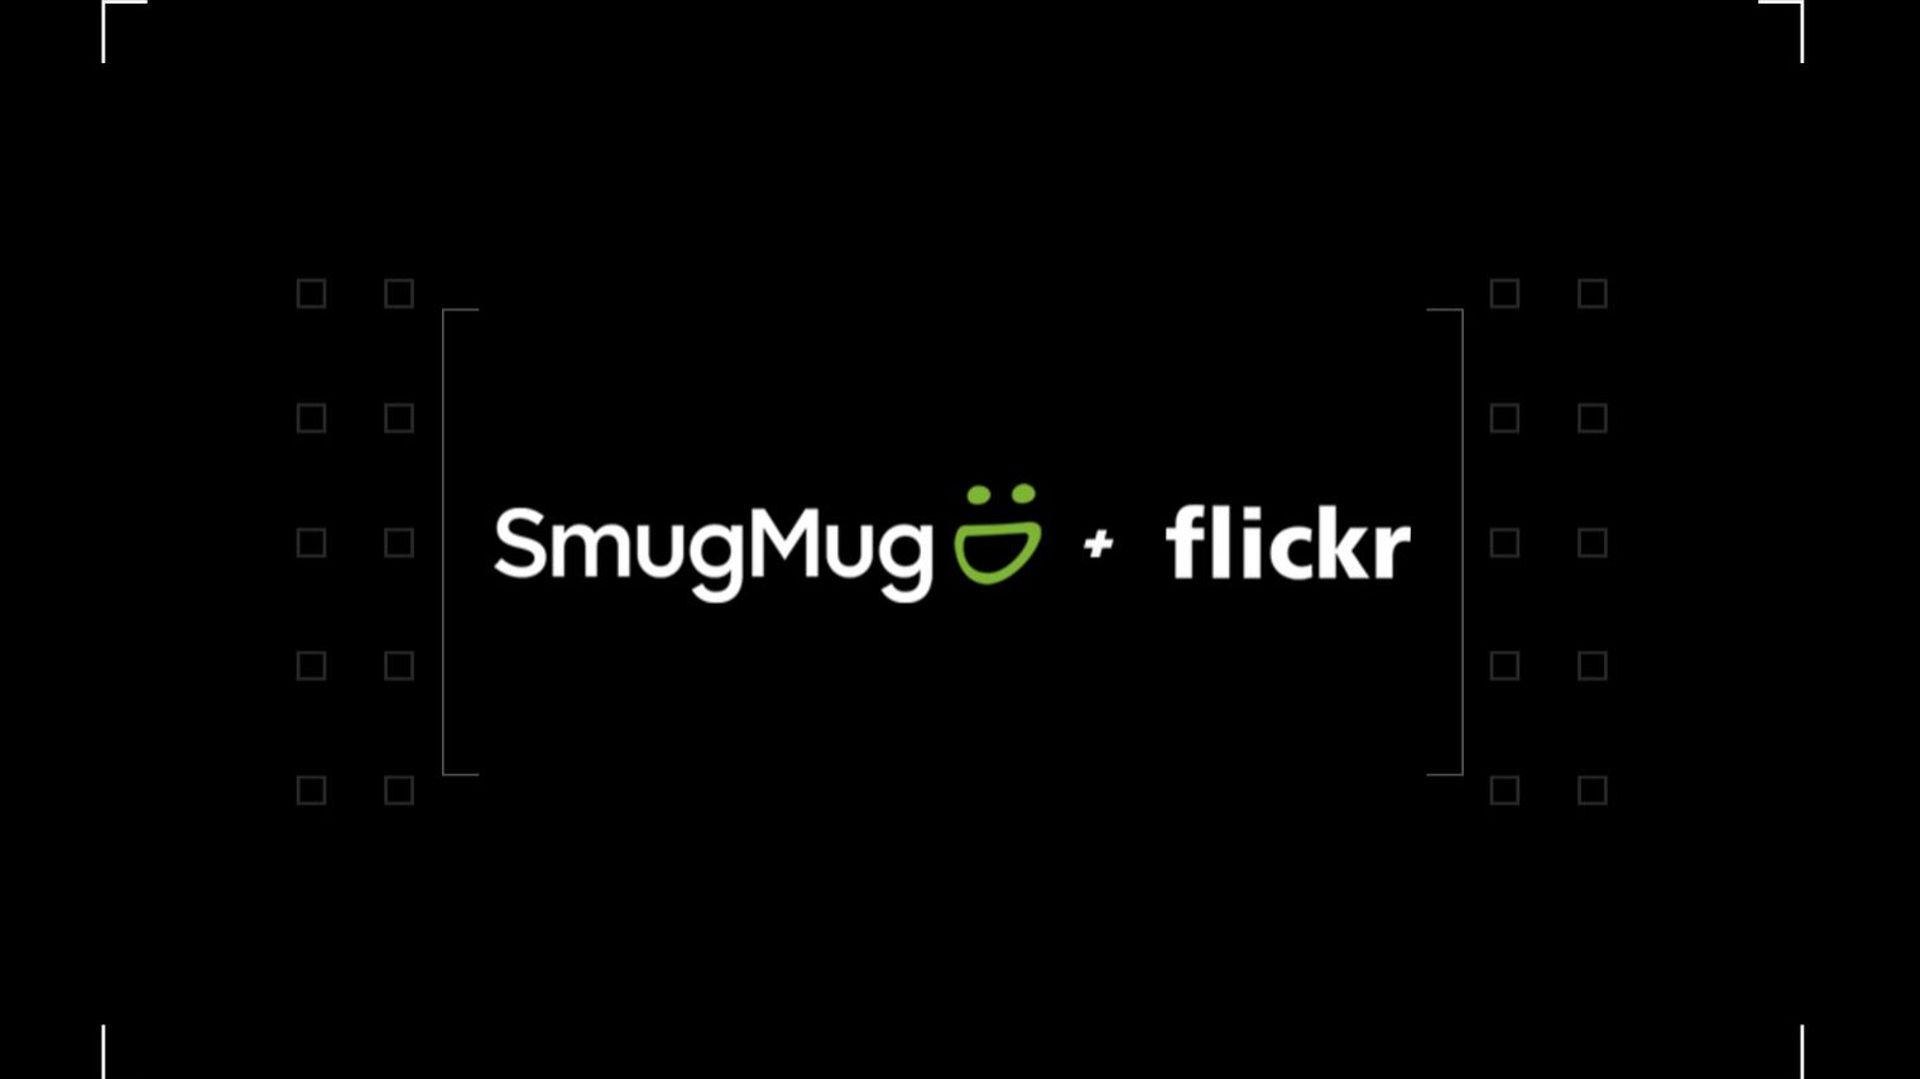 Quatorze ans après sa création, le service de stockage de photos Flickr est racheté par SmugMug